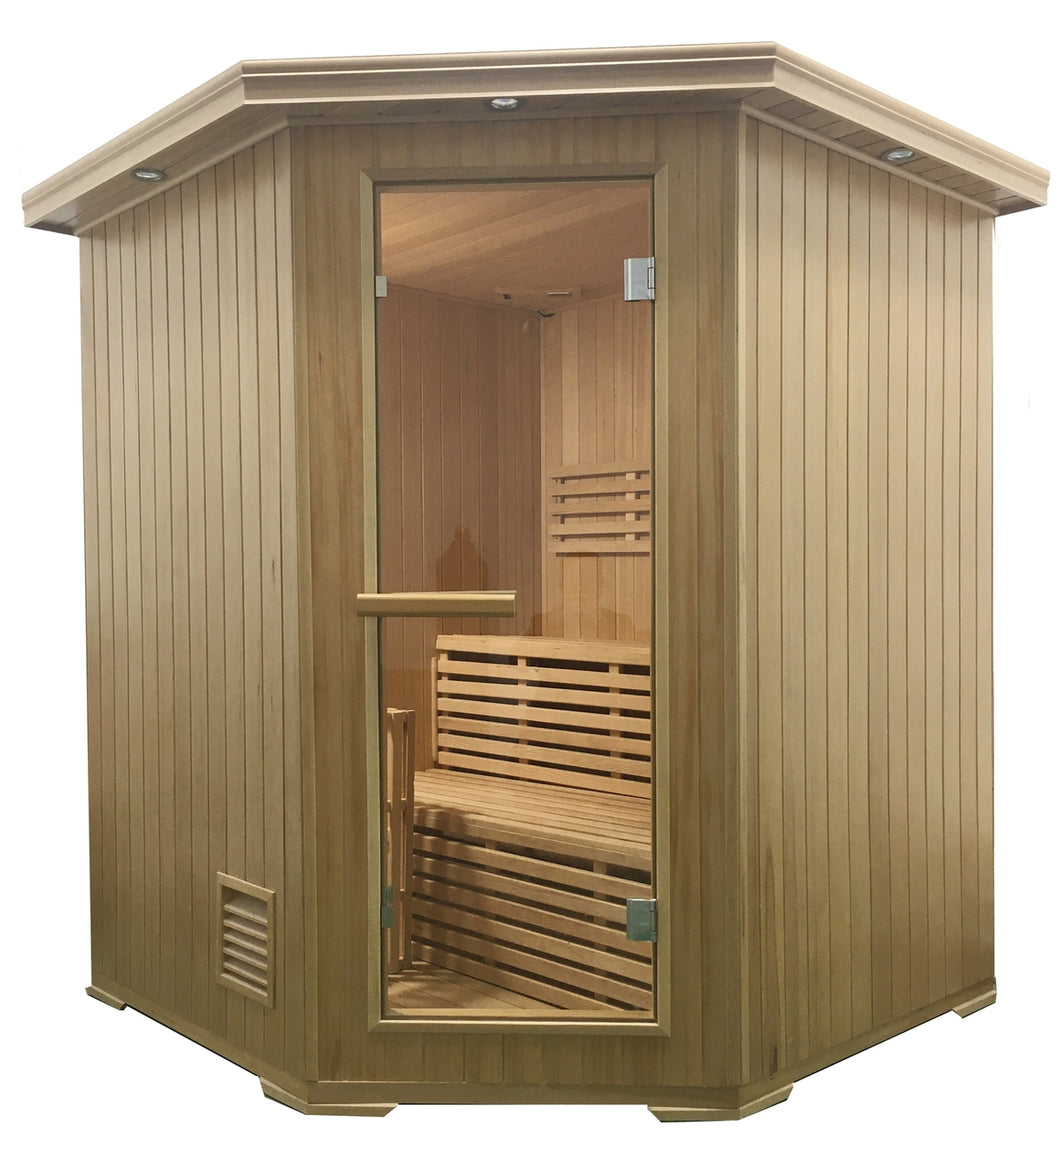 Canadian Hemlock Wet Dry Indoor Sauna - 4.5 kW ETL Certified Heater - 4 Person